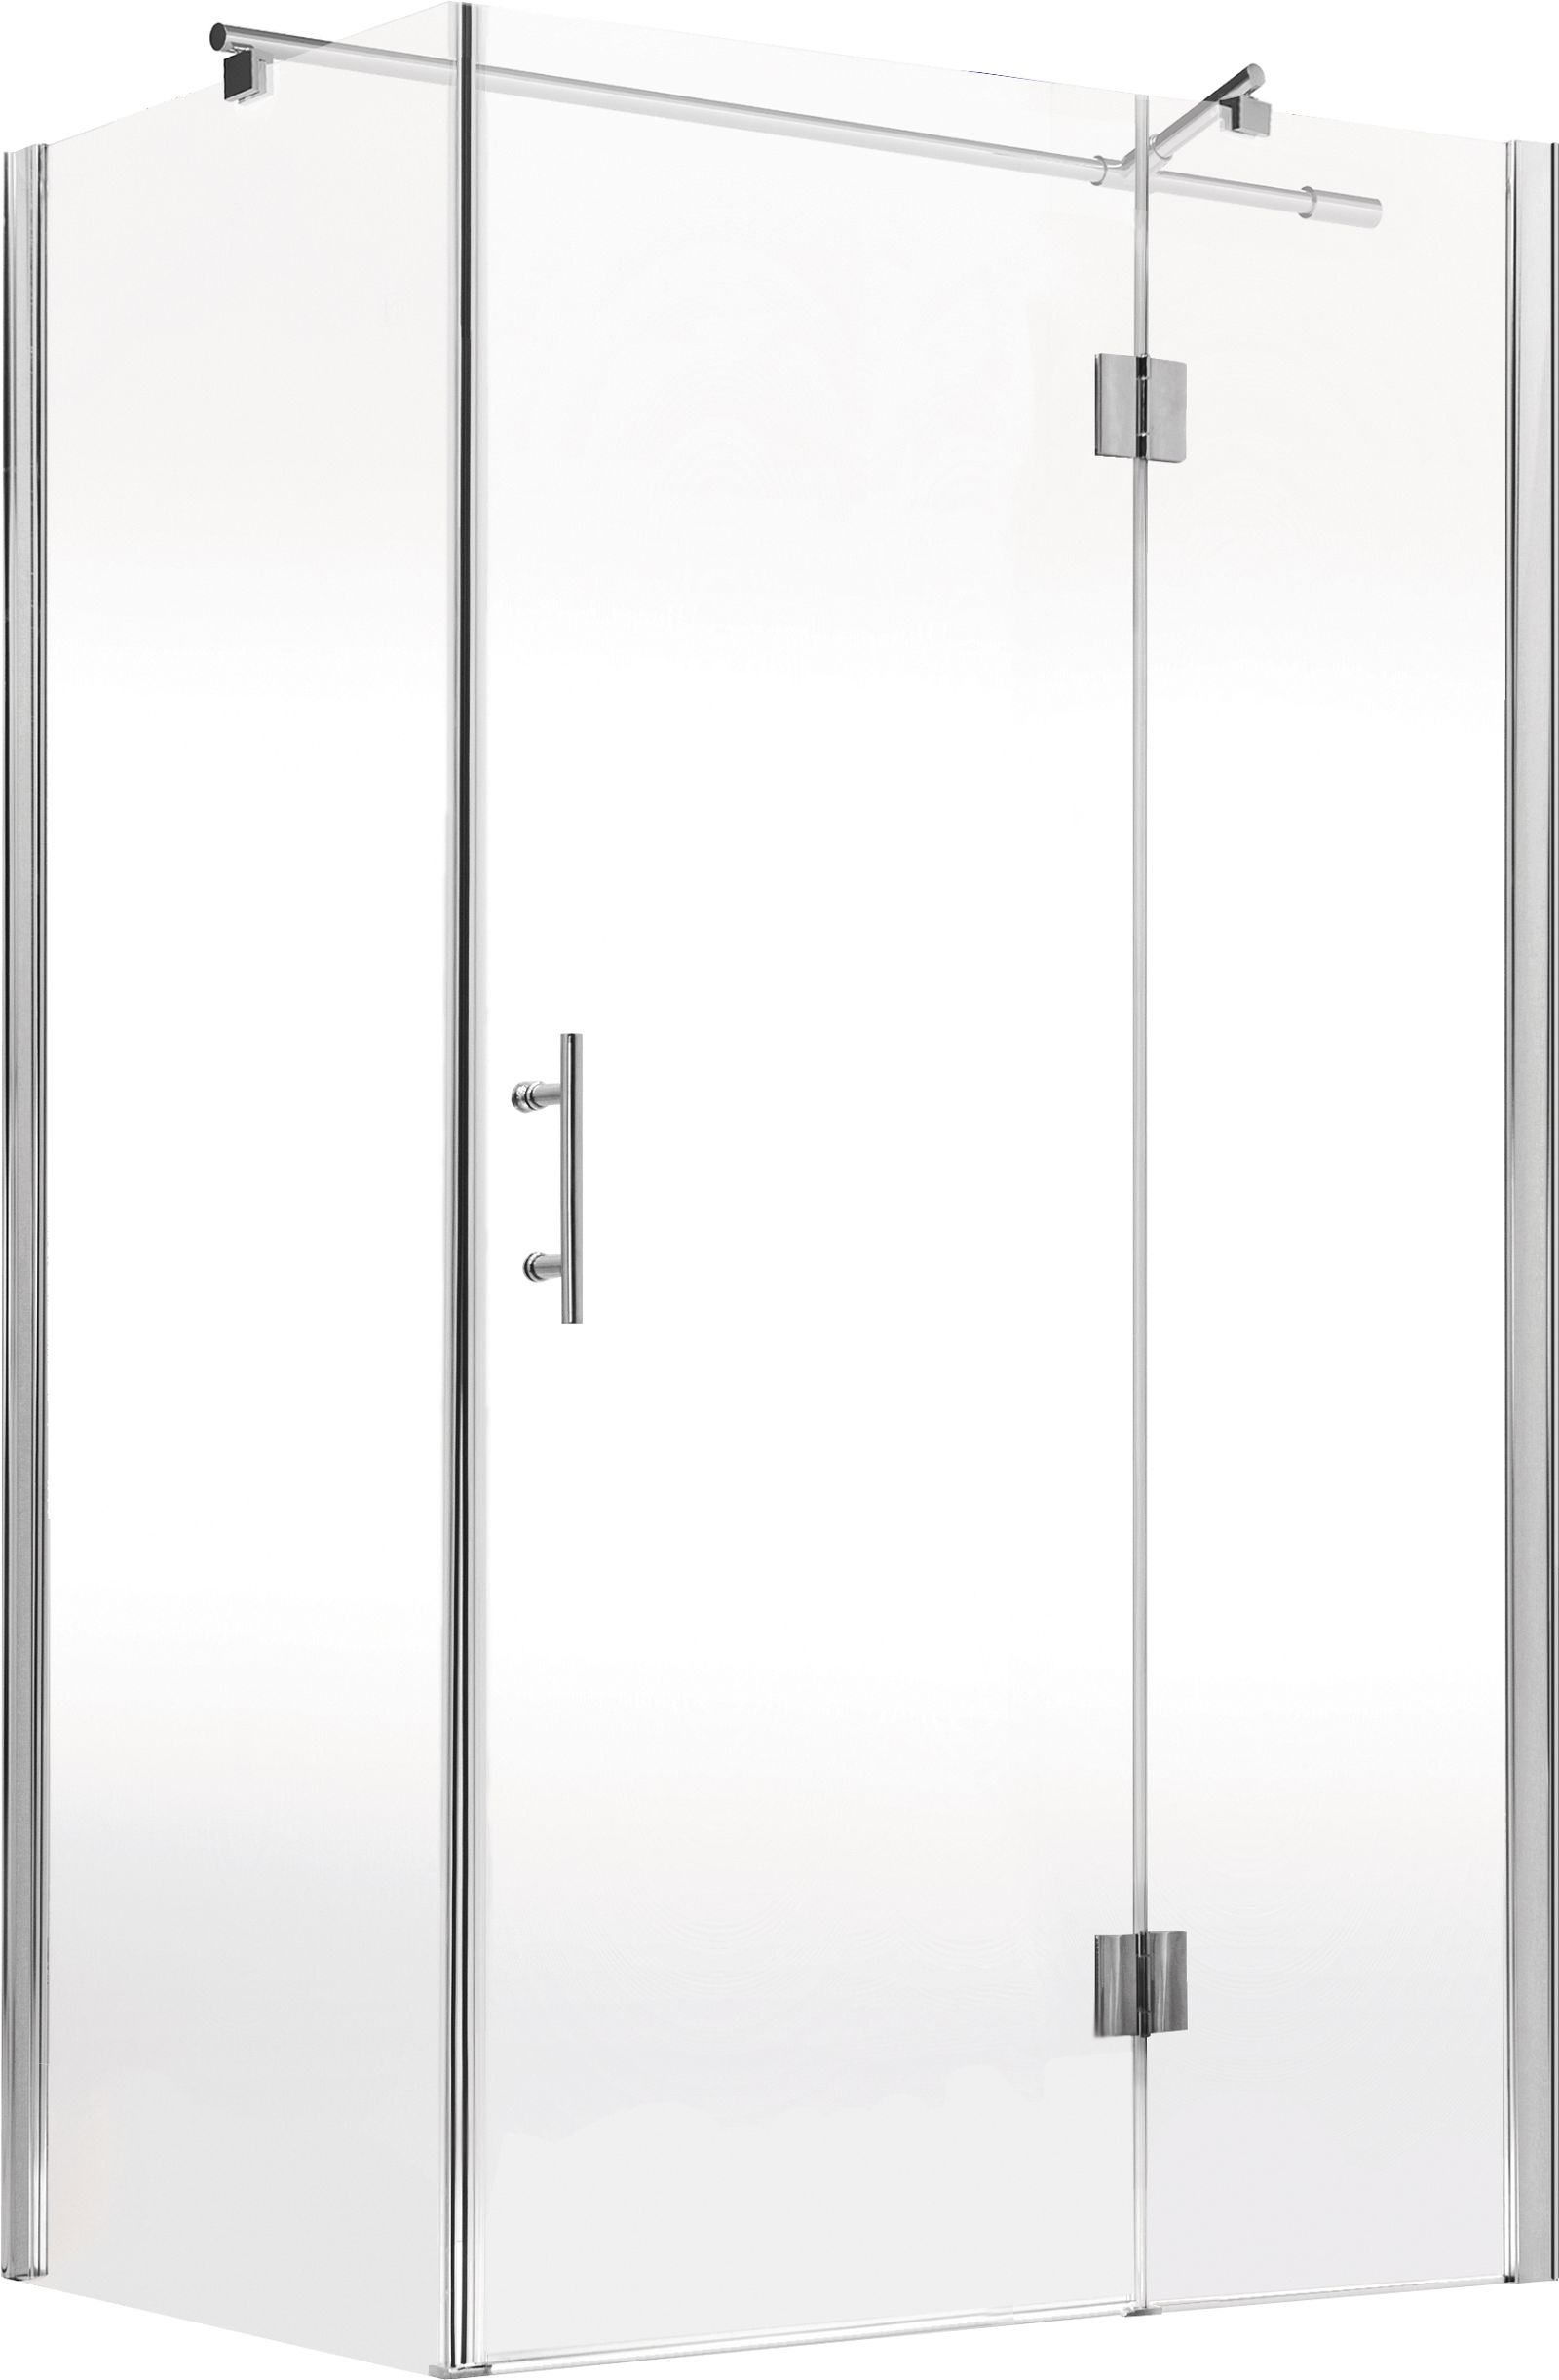 Shower cabin, rectangular, 90x100 cm - KTA_047P - Główne zdjęcie produktowe